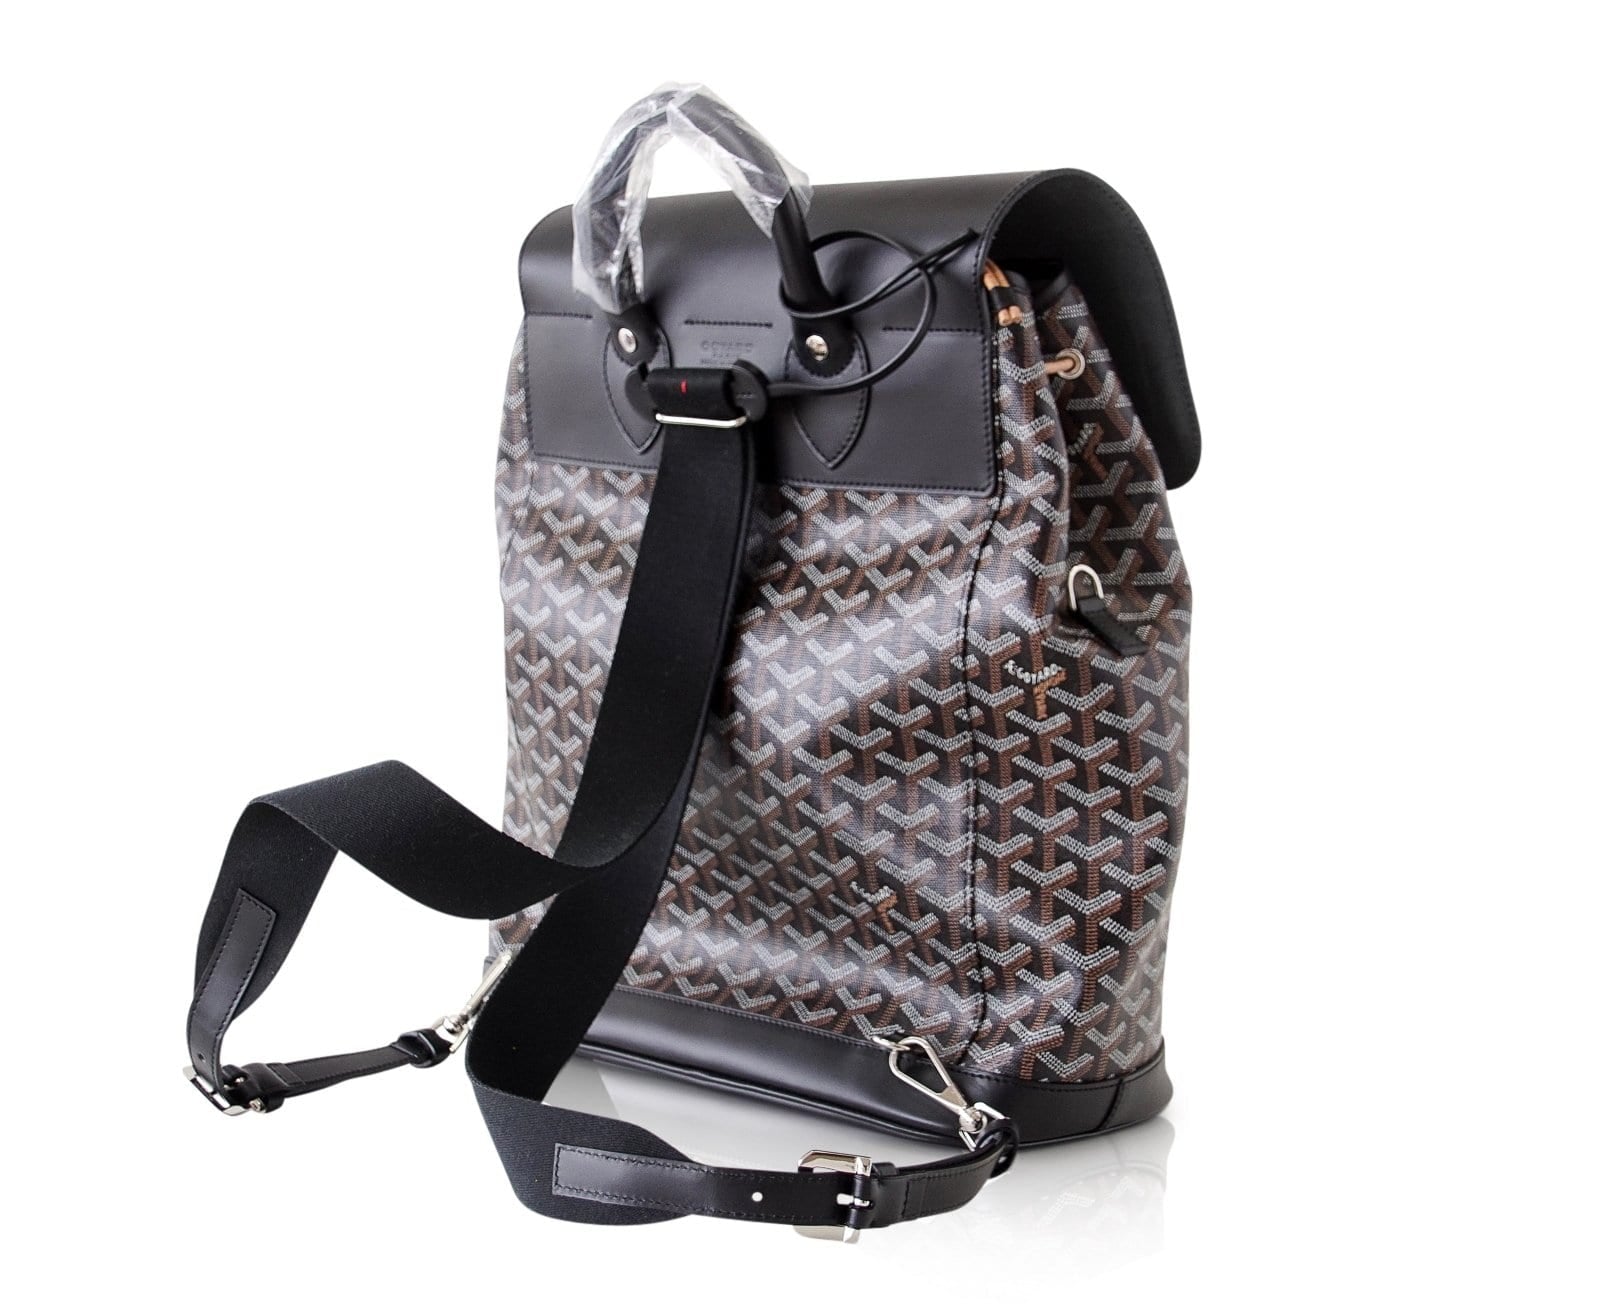 GOYARD Alpin MM Goyardine Canvas Leather Backpack Bag Tan